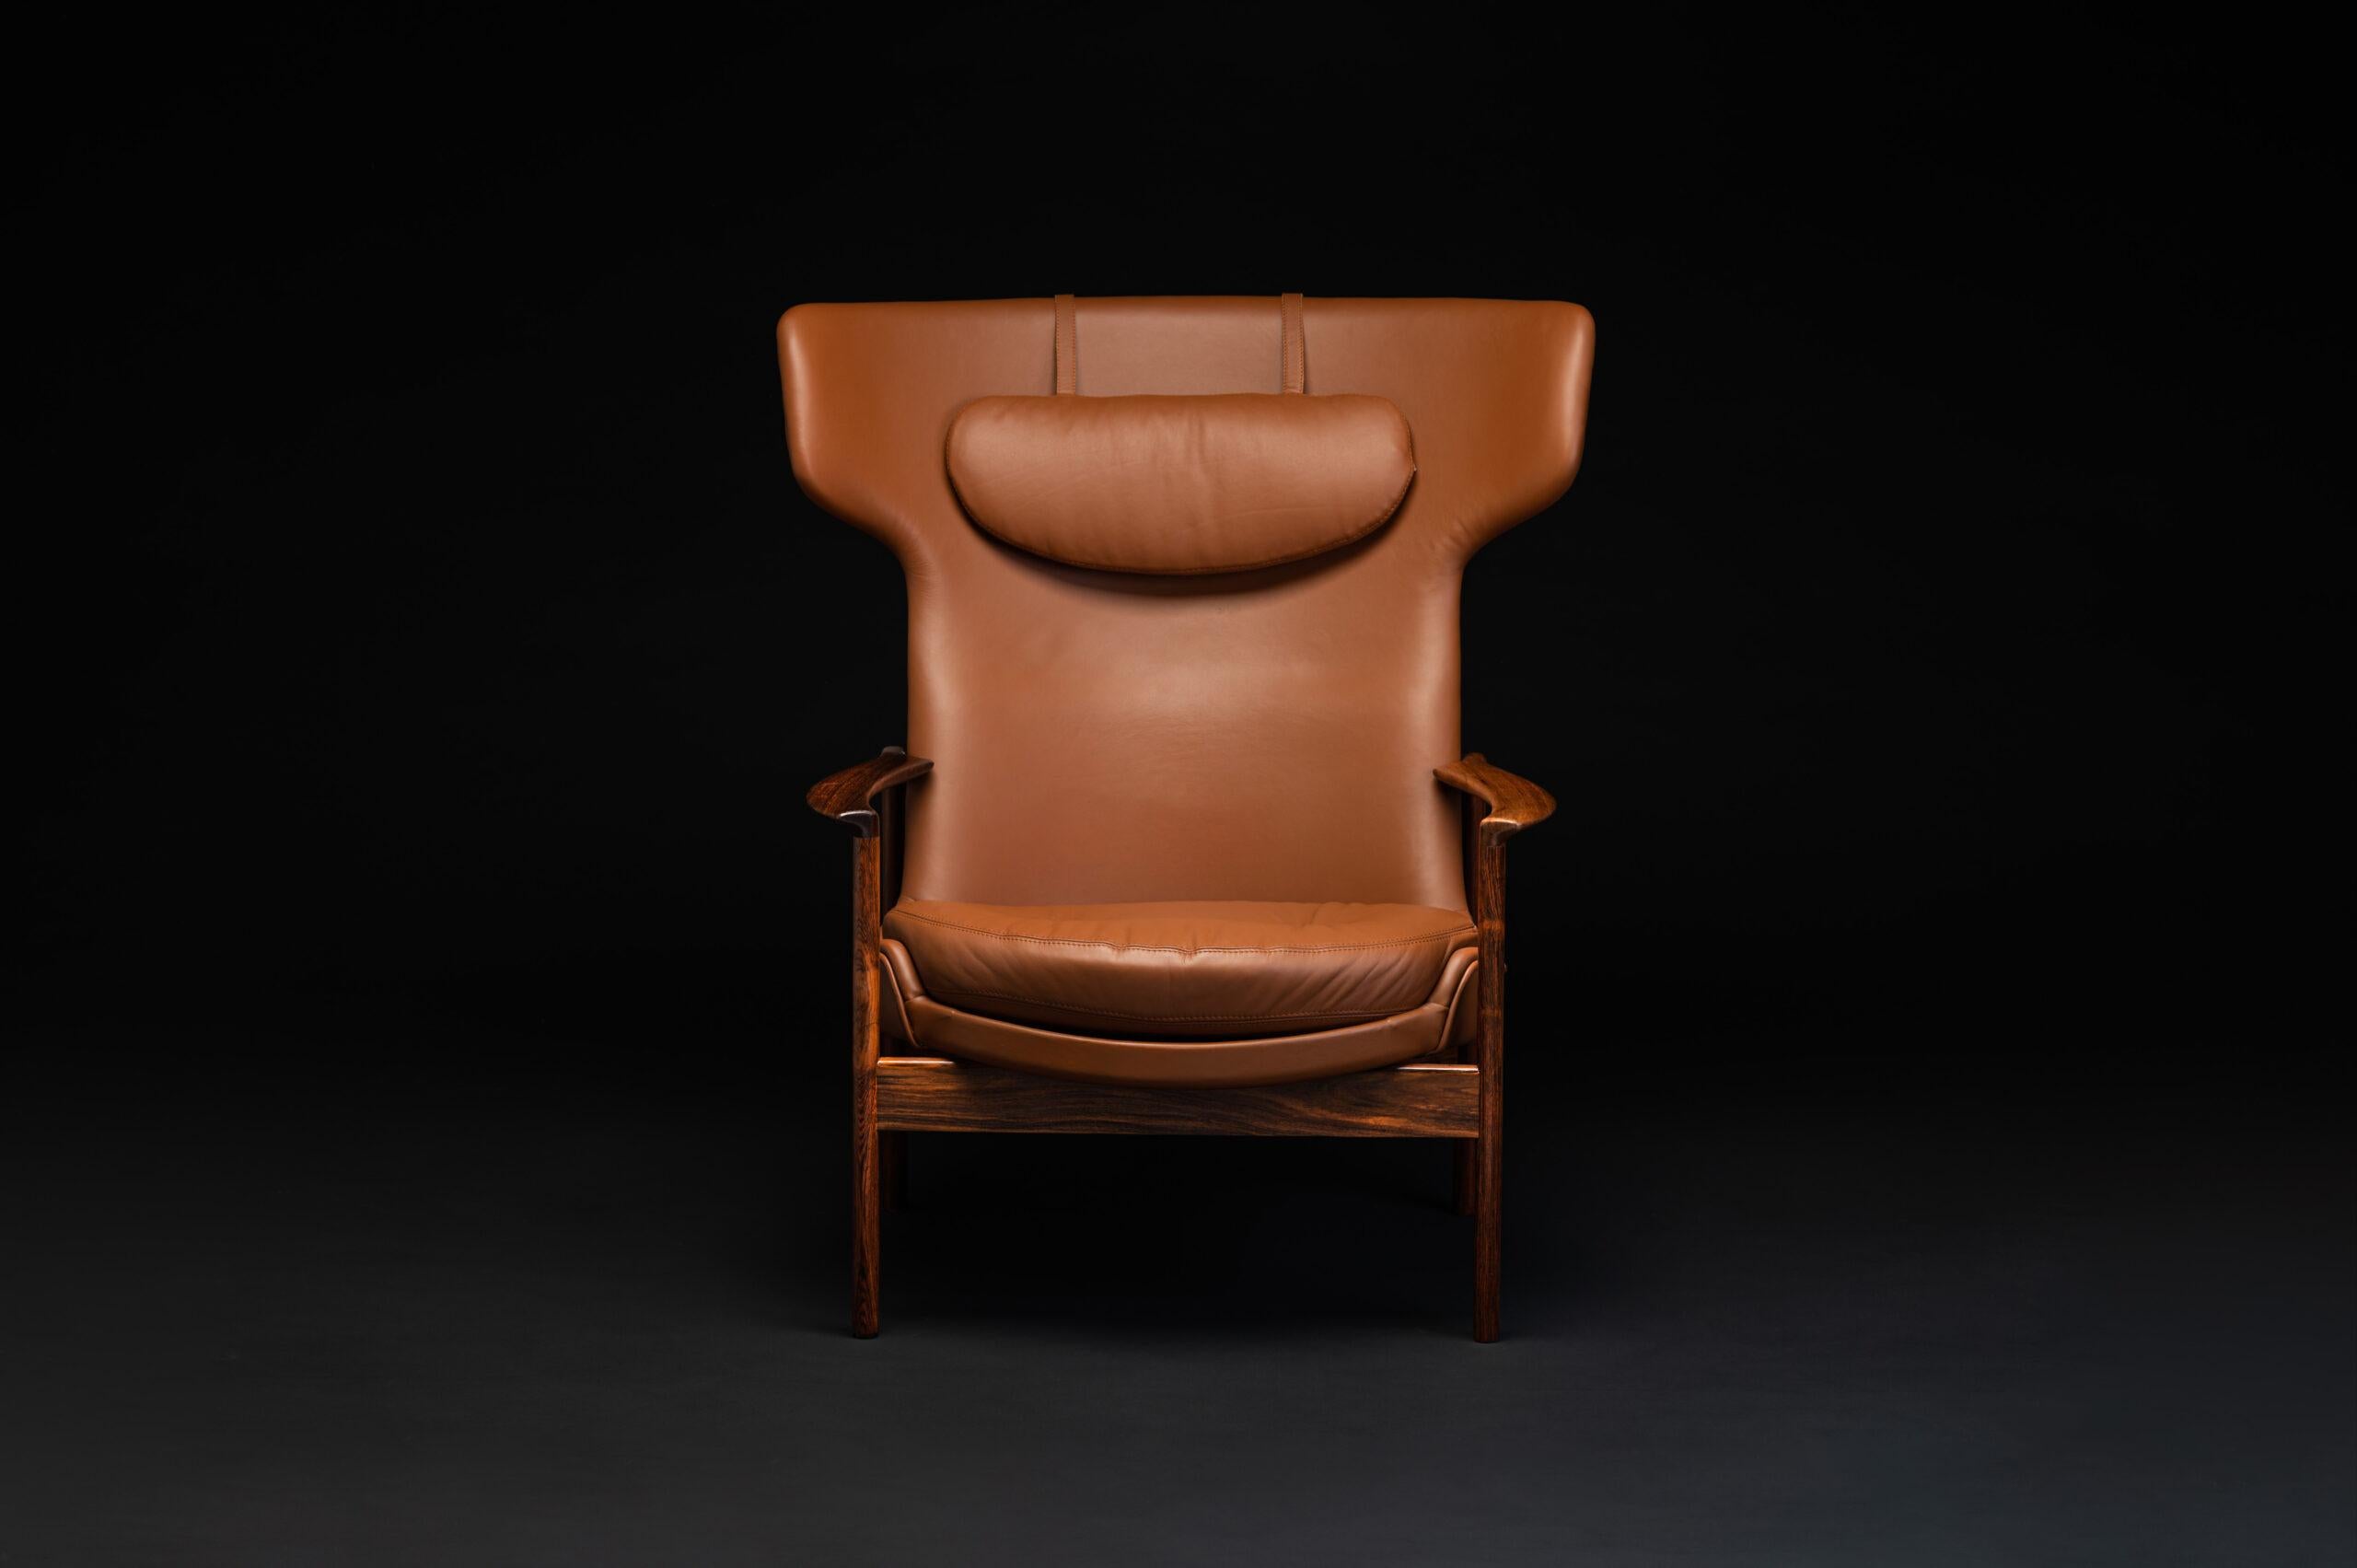 Chaise longue à dossier large conçue par Ib Kofod Larsen en 1974 pour Fröscher KG en Allemagne. Le cadre en bois de rose est magnifiquement détaillé et entièrement restauré. Le cuir et le rembourrage ont été entièrement renouvelés en cuir